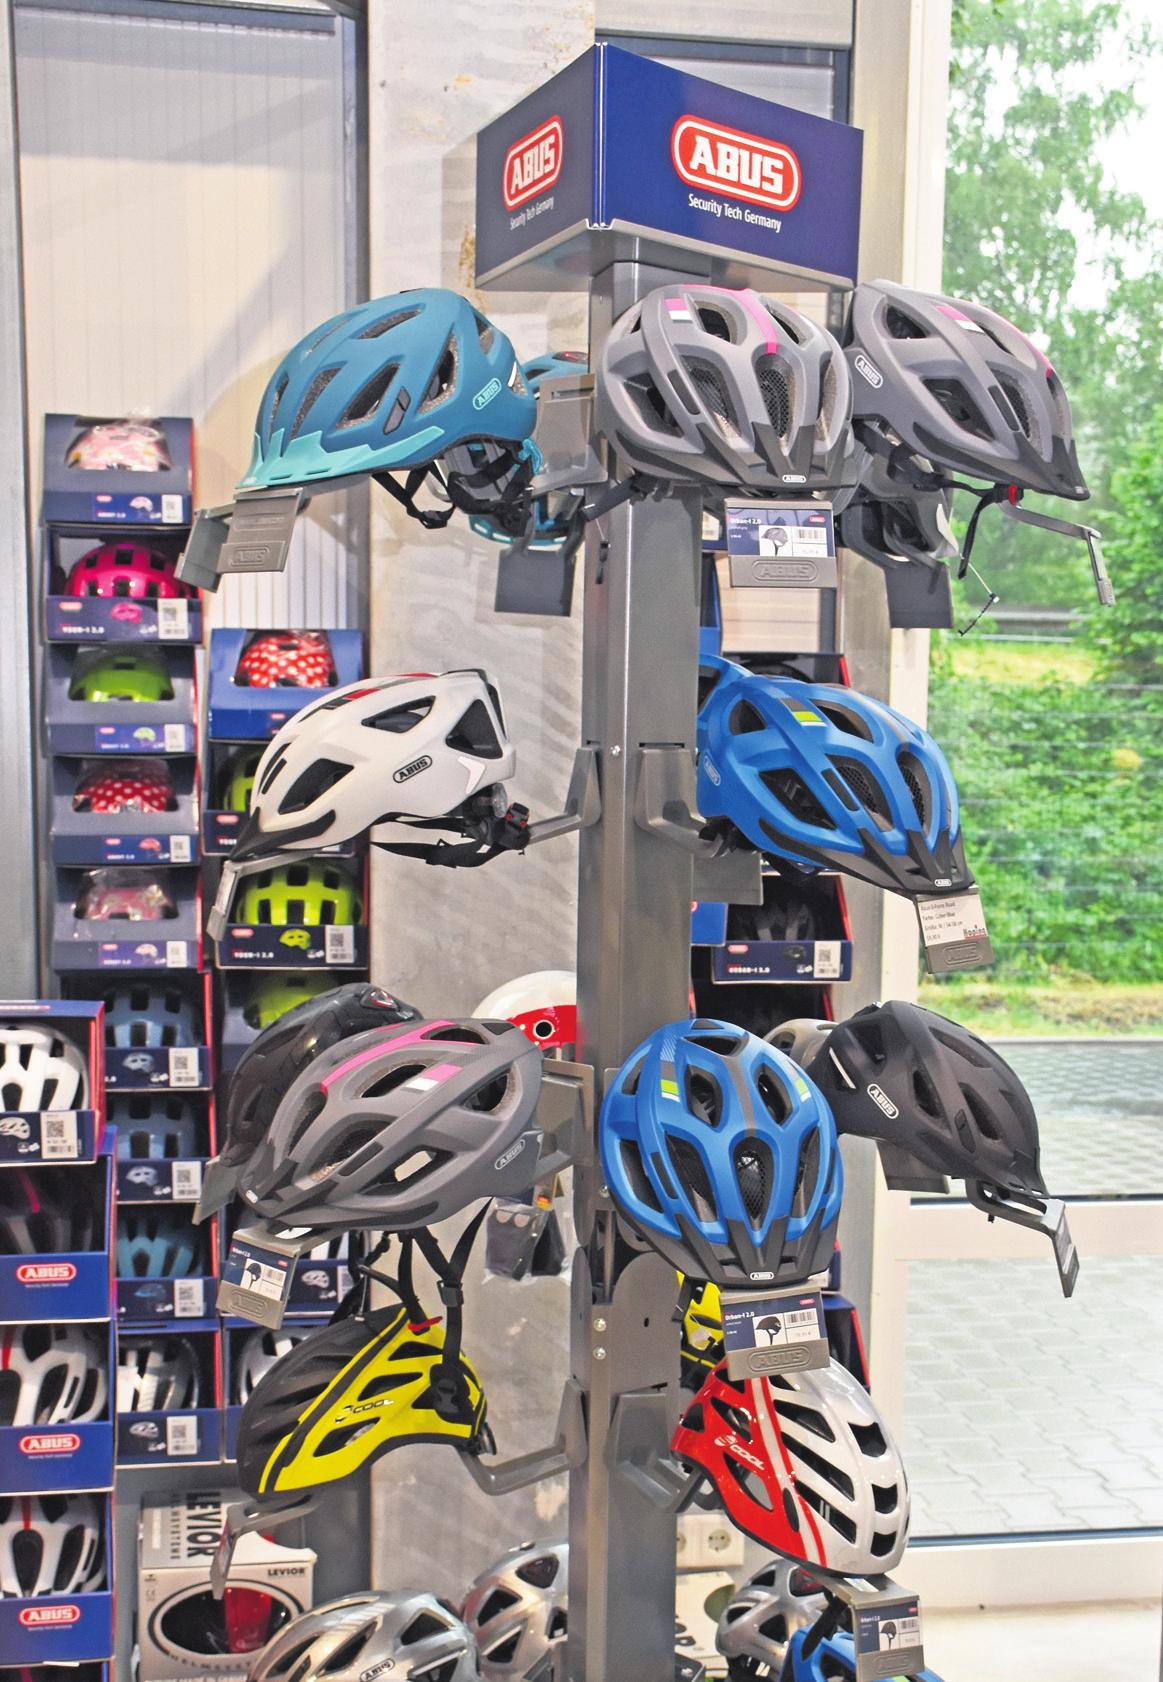 Safety first: Für eine sichere Fahrt finden die Kunden eine große Auswahl an Fahrradhelmen. Foto: Tanja Schulte-Saß